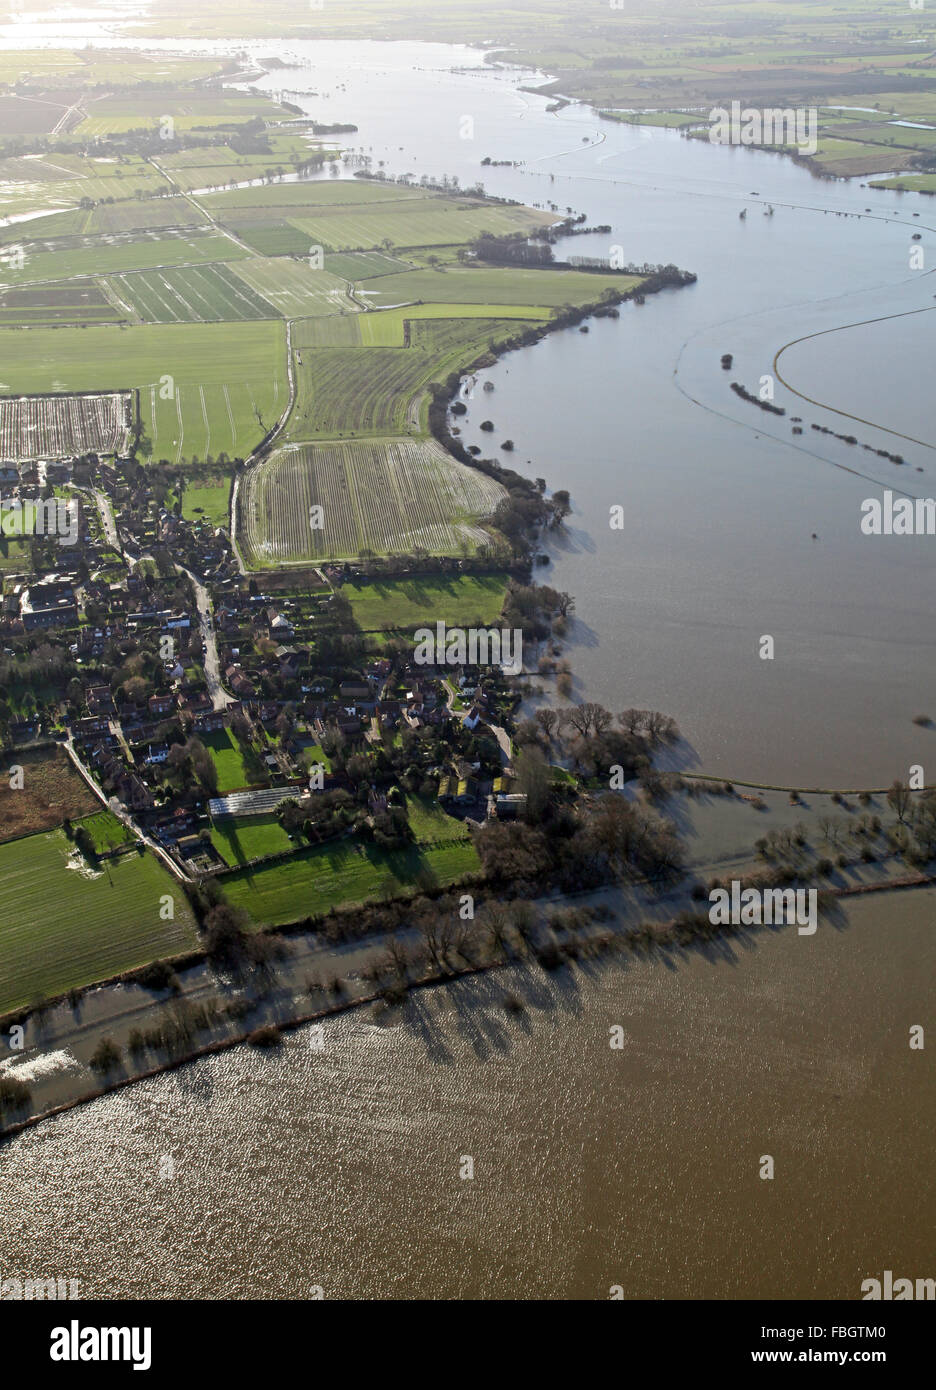 Vista aerea di un villaggio sul bordo di una pianura alluvionale, nello Yorkshire, Regno Unito Foto Stock